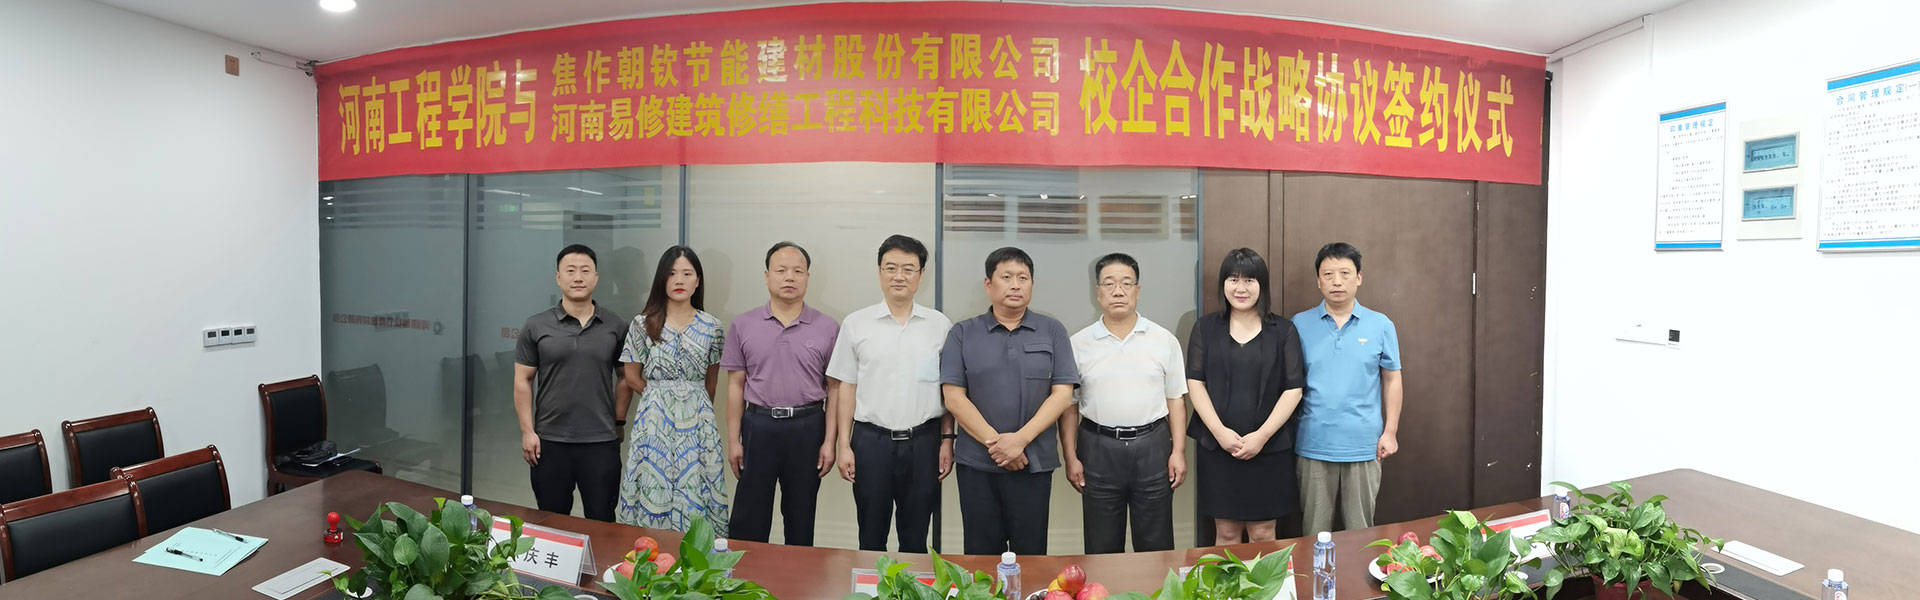 易修科技与河南朝钦集团公司、河南工程学院签订合作战略协议